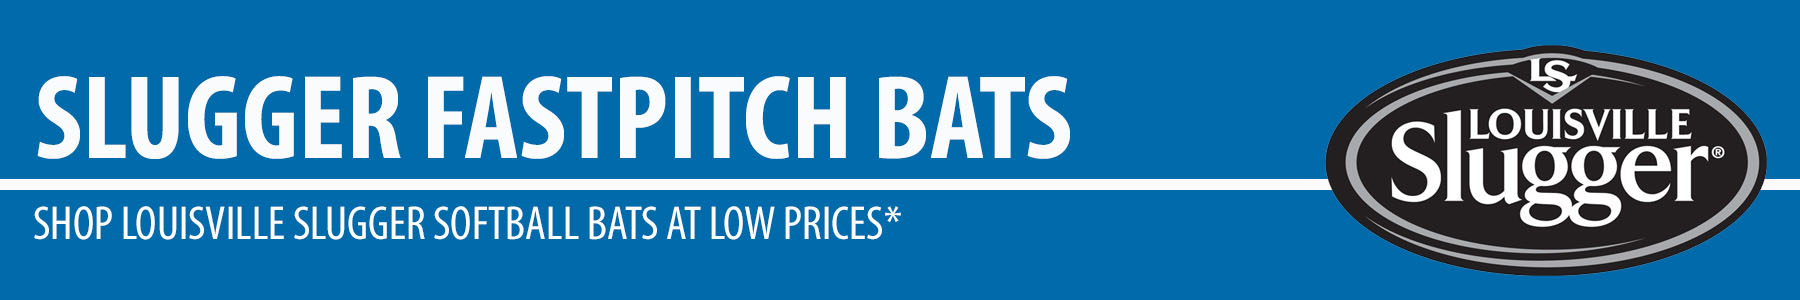 Louisville Slugger Fastpitch Softball Bats - Xeno Fastpitch Bat - LXT Fastpitch Bat